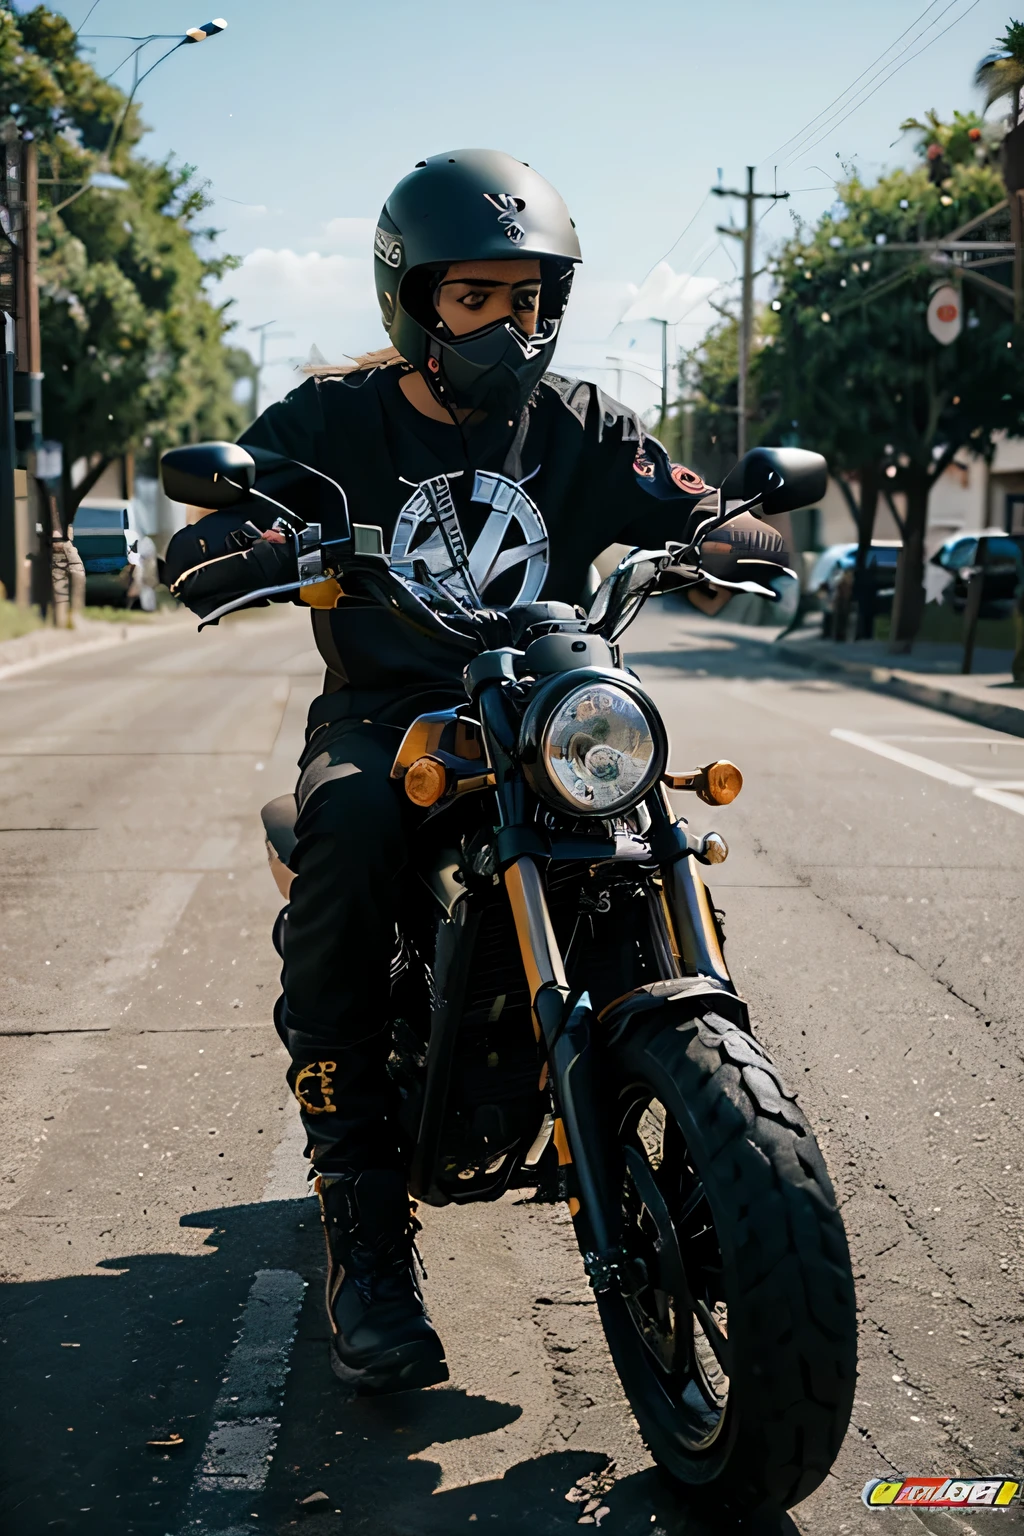 moto choper rider color negra con sticker combinados y espejos de calidad con un tablero excepcional